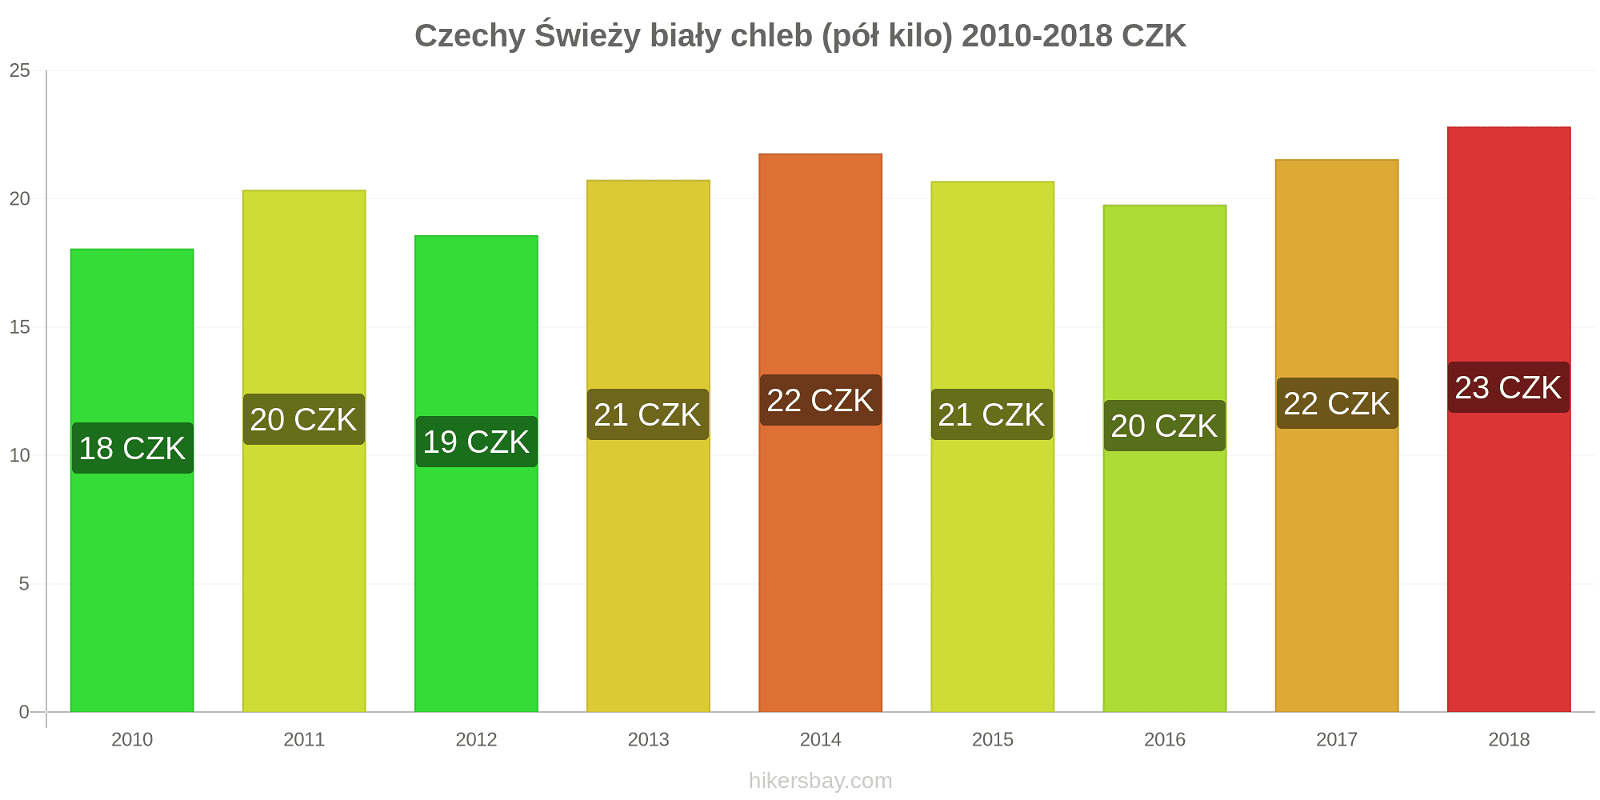 Czechy zmiany cen Chleb pół kilo hikersbay.com